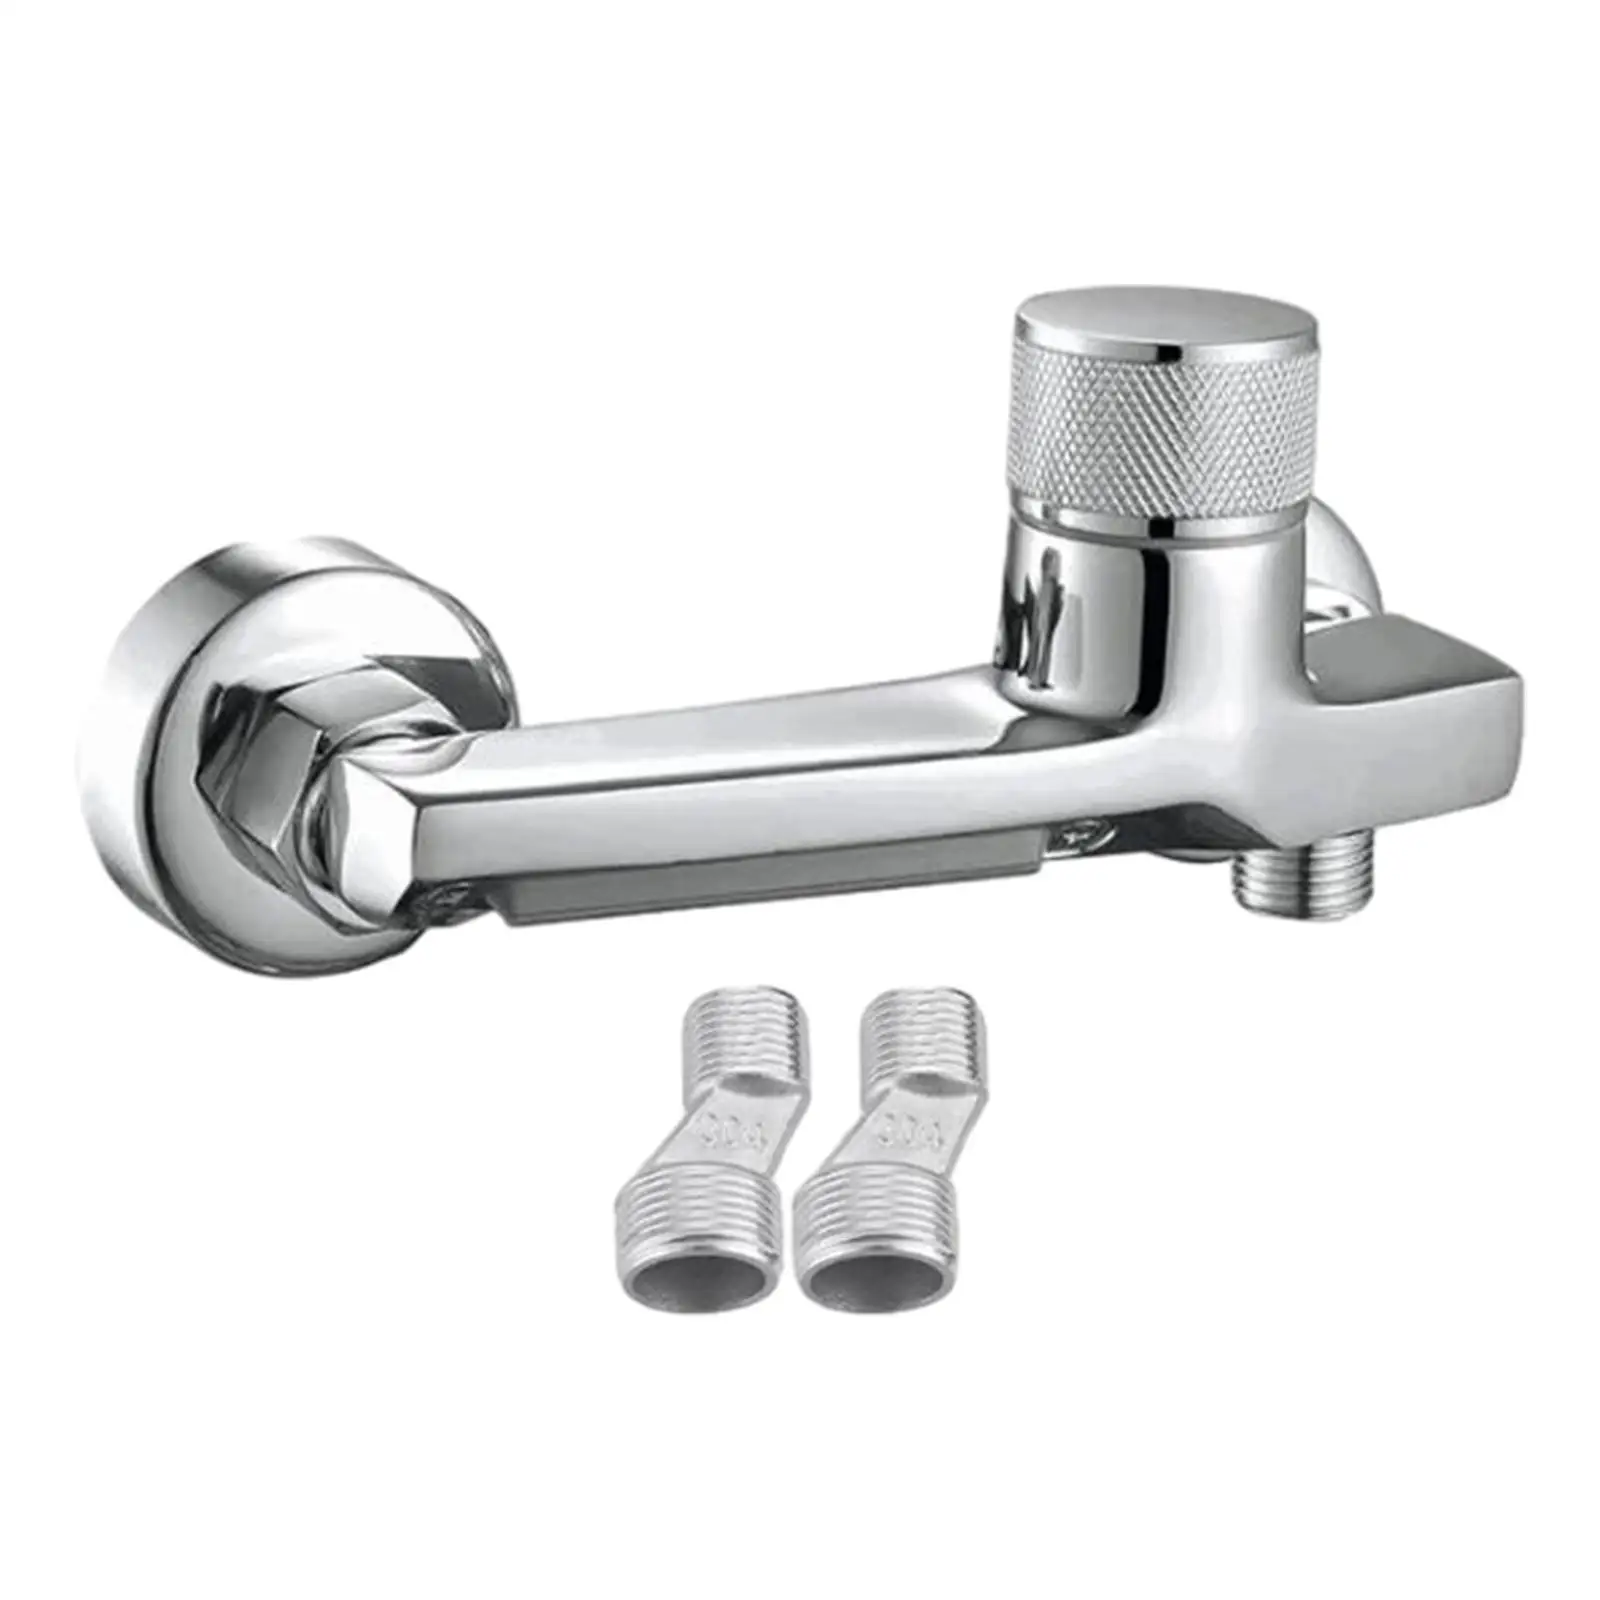 Tub Filler Faucet Universal Sink Faucet Spout Wall Mount Bathtub Faucet